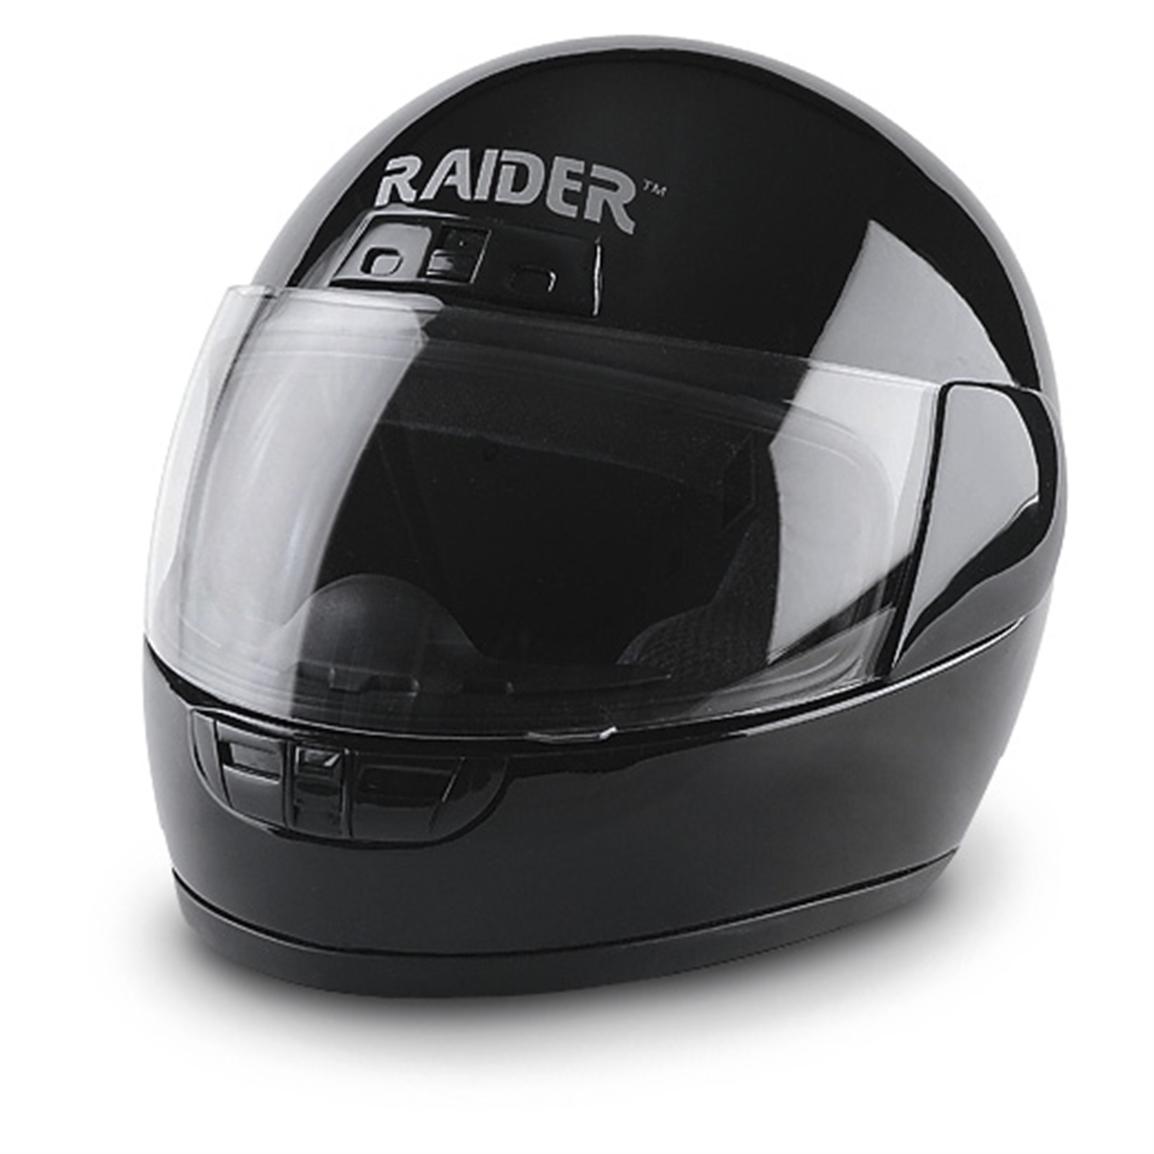 Raider™ Motorcycle Helmet - 136136, Helmets & Goggles at Sportsman's Guide